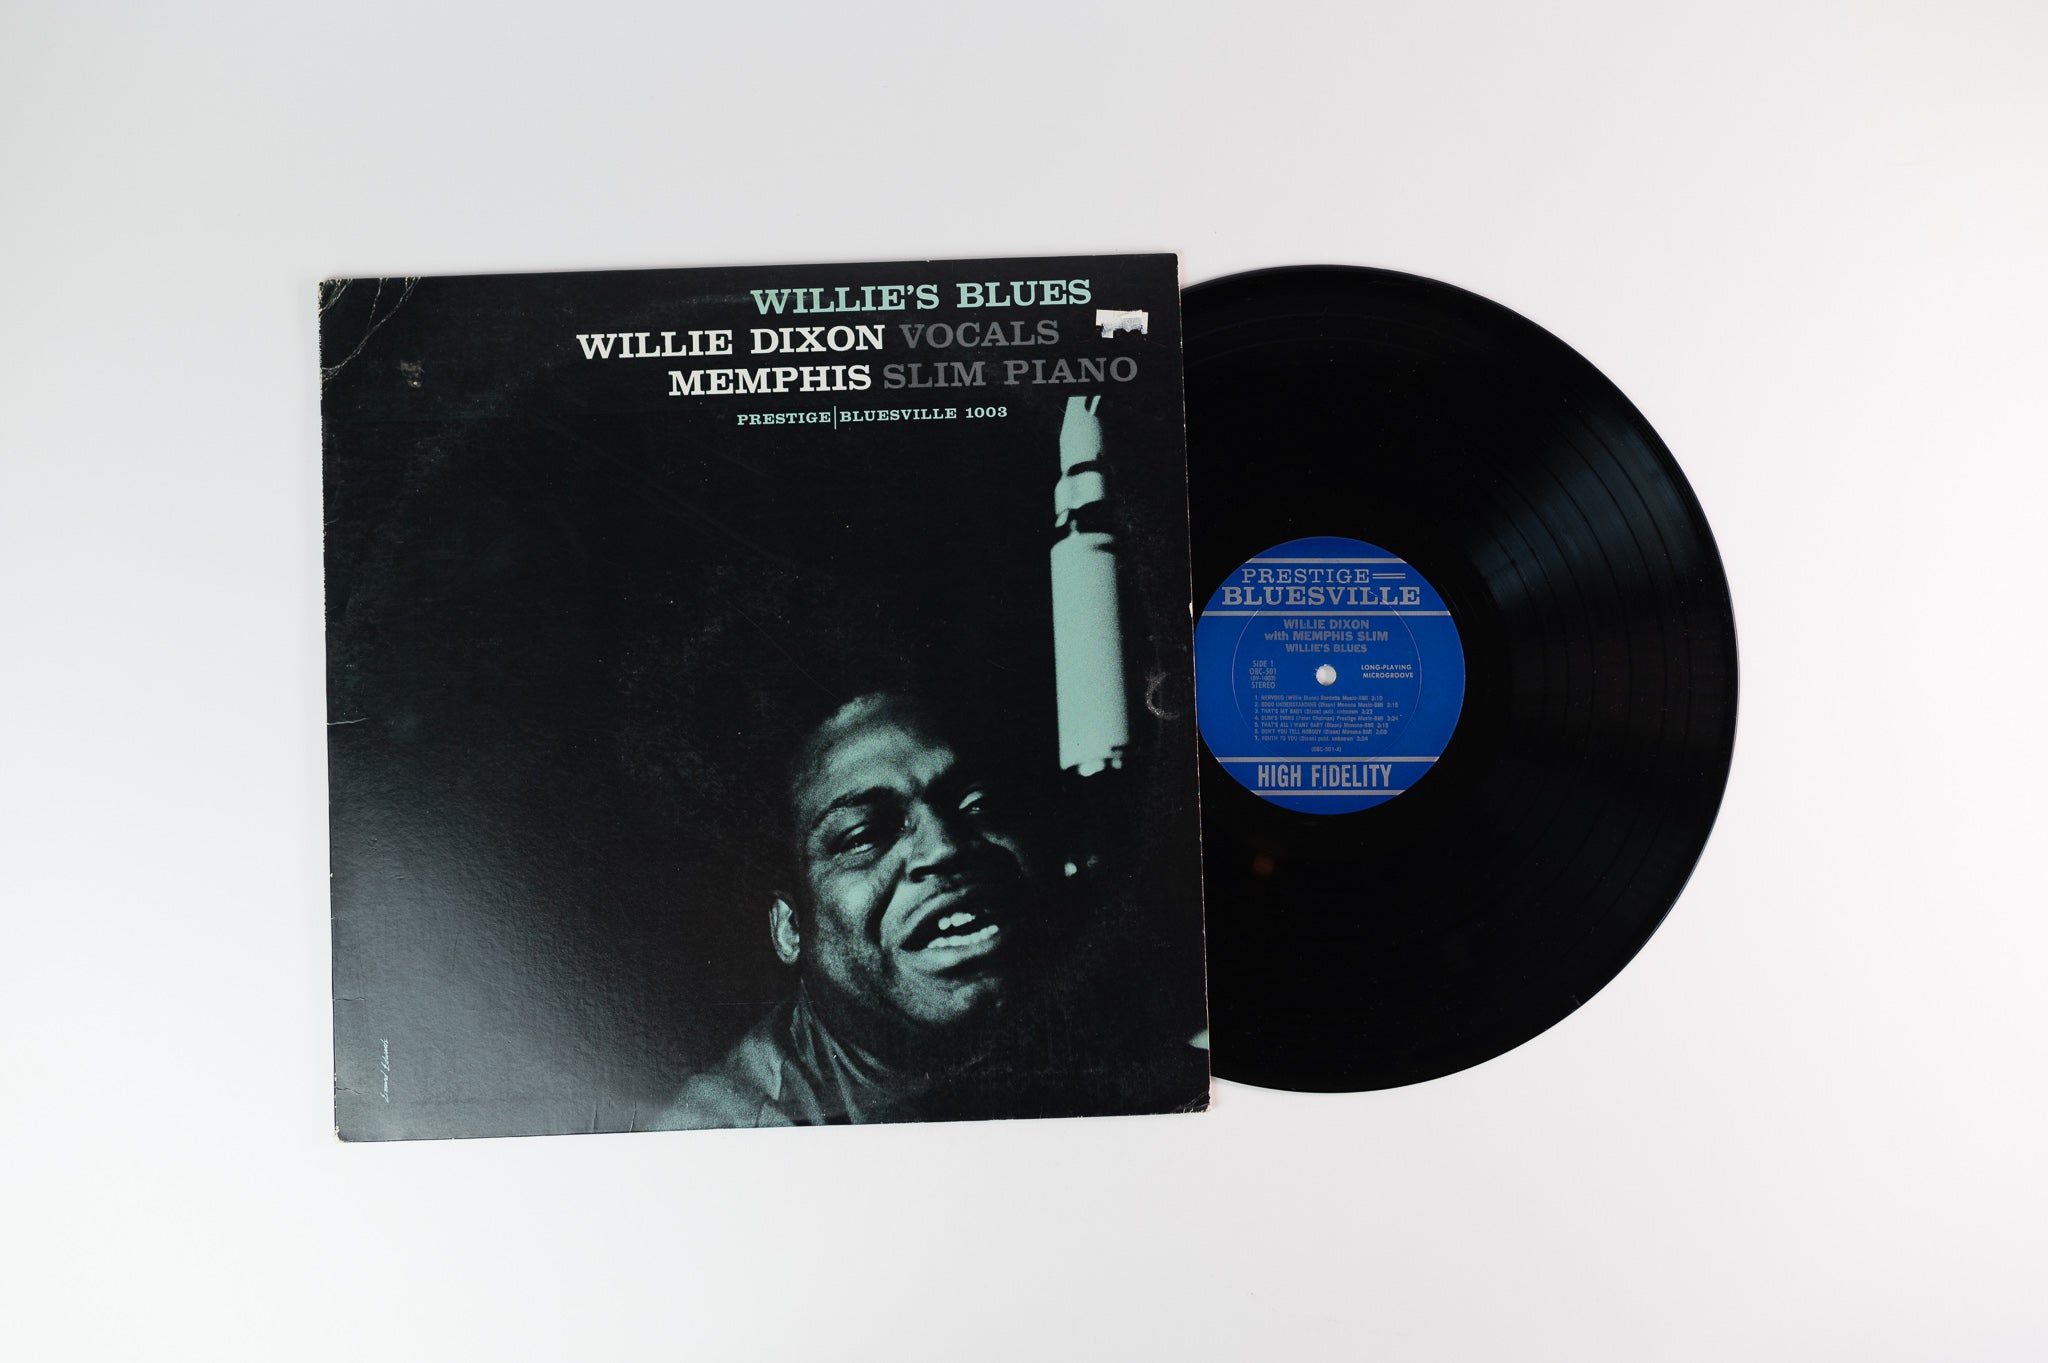 Willie Dixon - Willie's Blues on Prestige Bluesville OJC Reissue